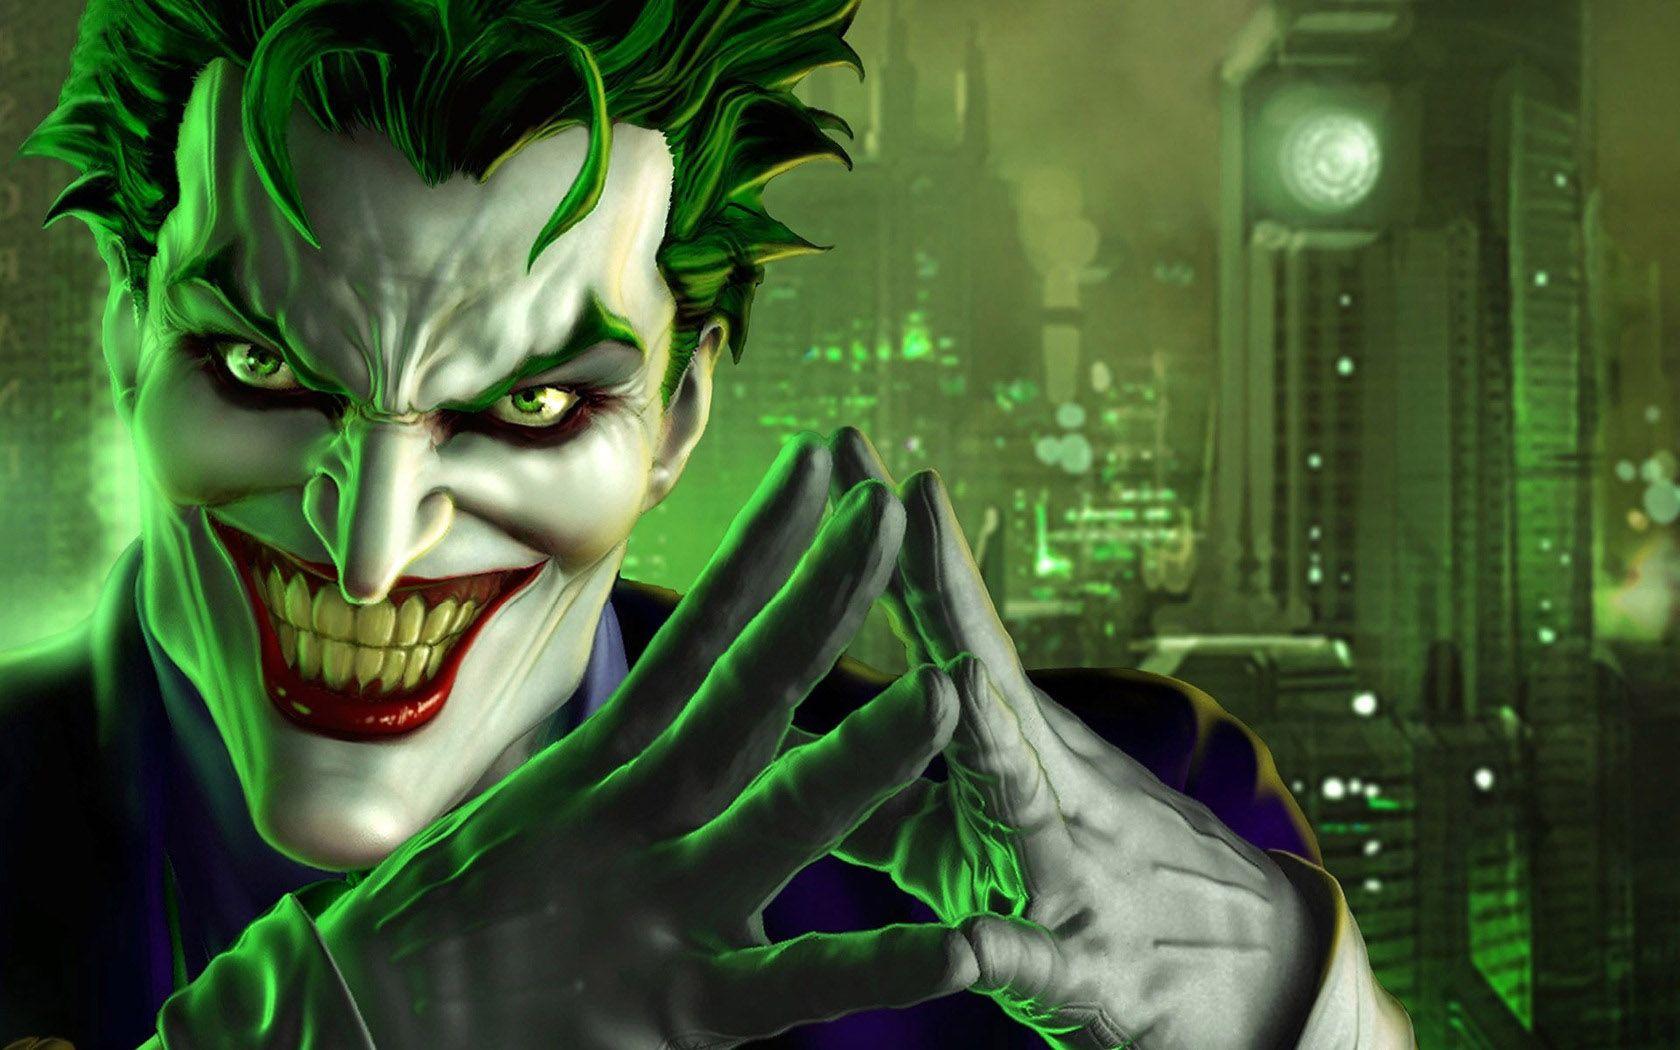 3D Wallpaper. Joker image, Joker wallpaper, Joker background